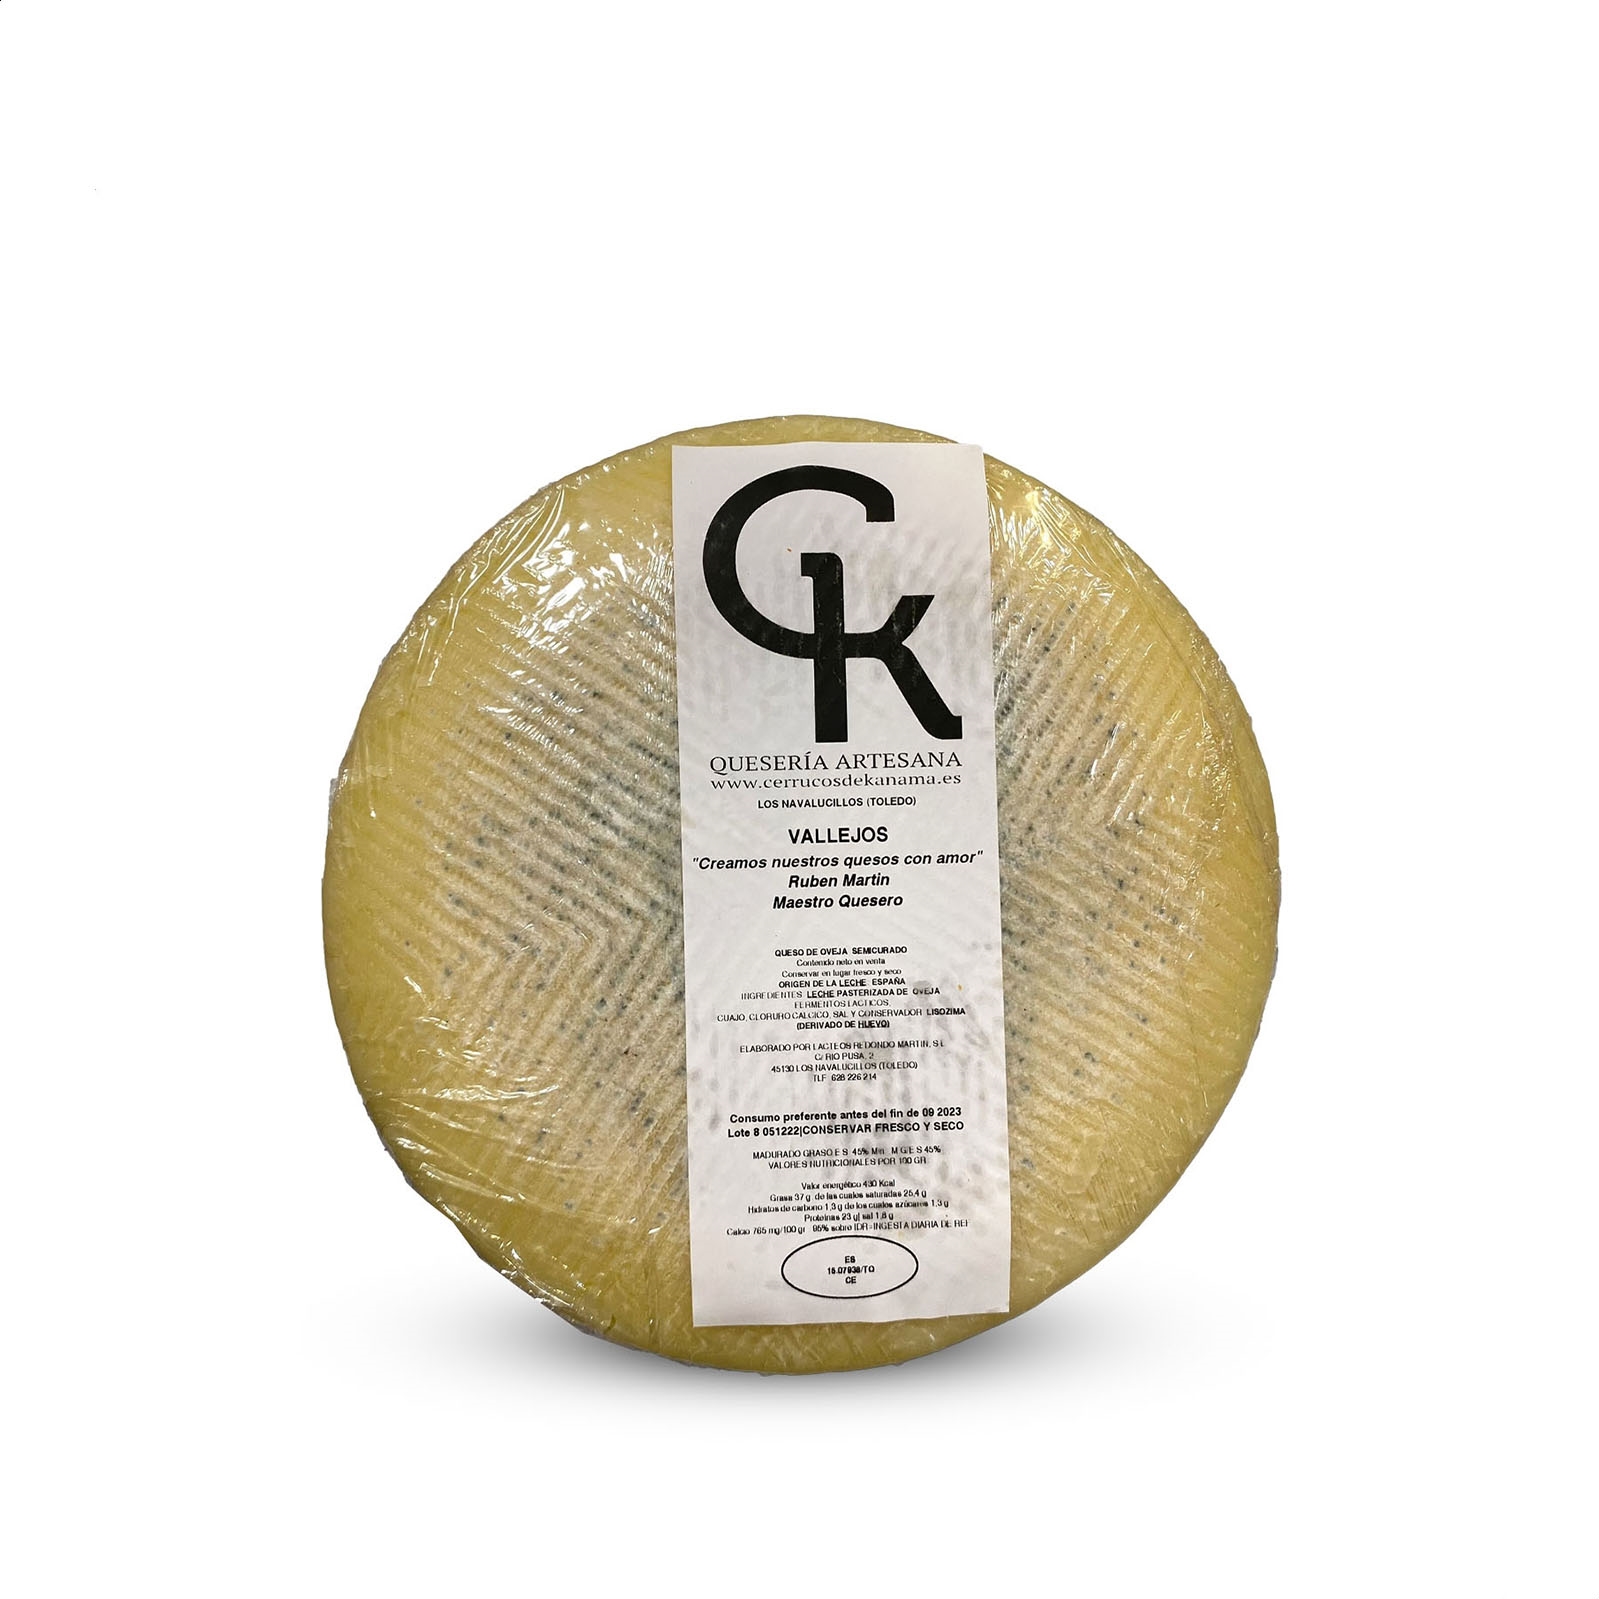 Cerrucos de Kanama - Vallejo, queso semicurado de leche pasterizada de oveja 800g aprox, 1ud